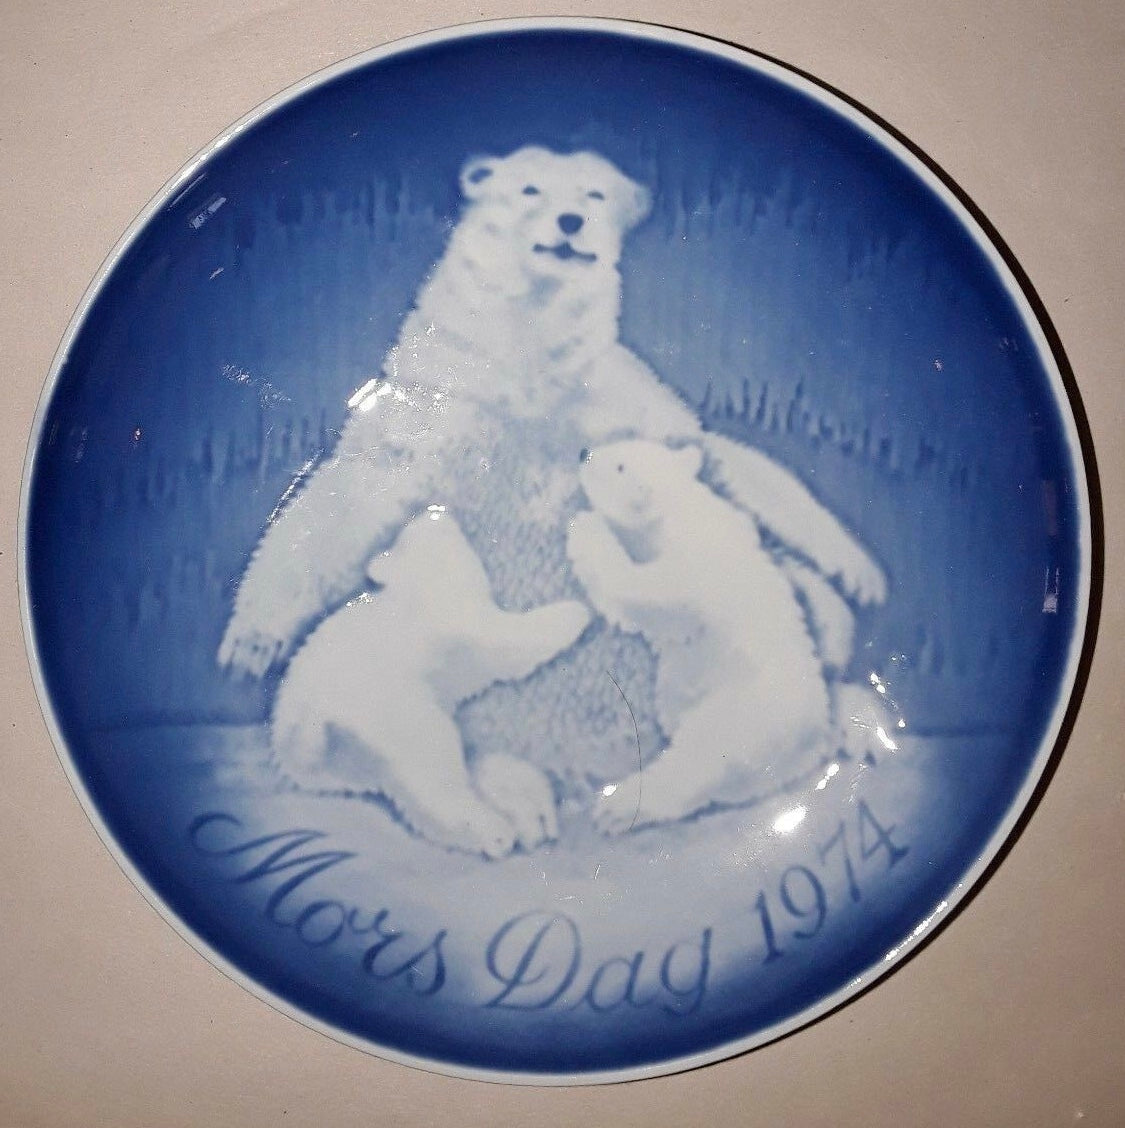 1974, Bing & Grondahl Mors Dag Mother's Day Porcelain Plate